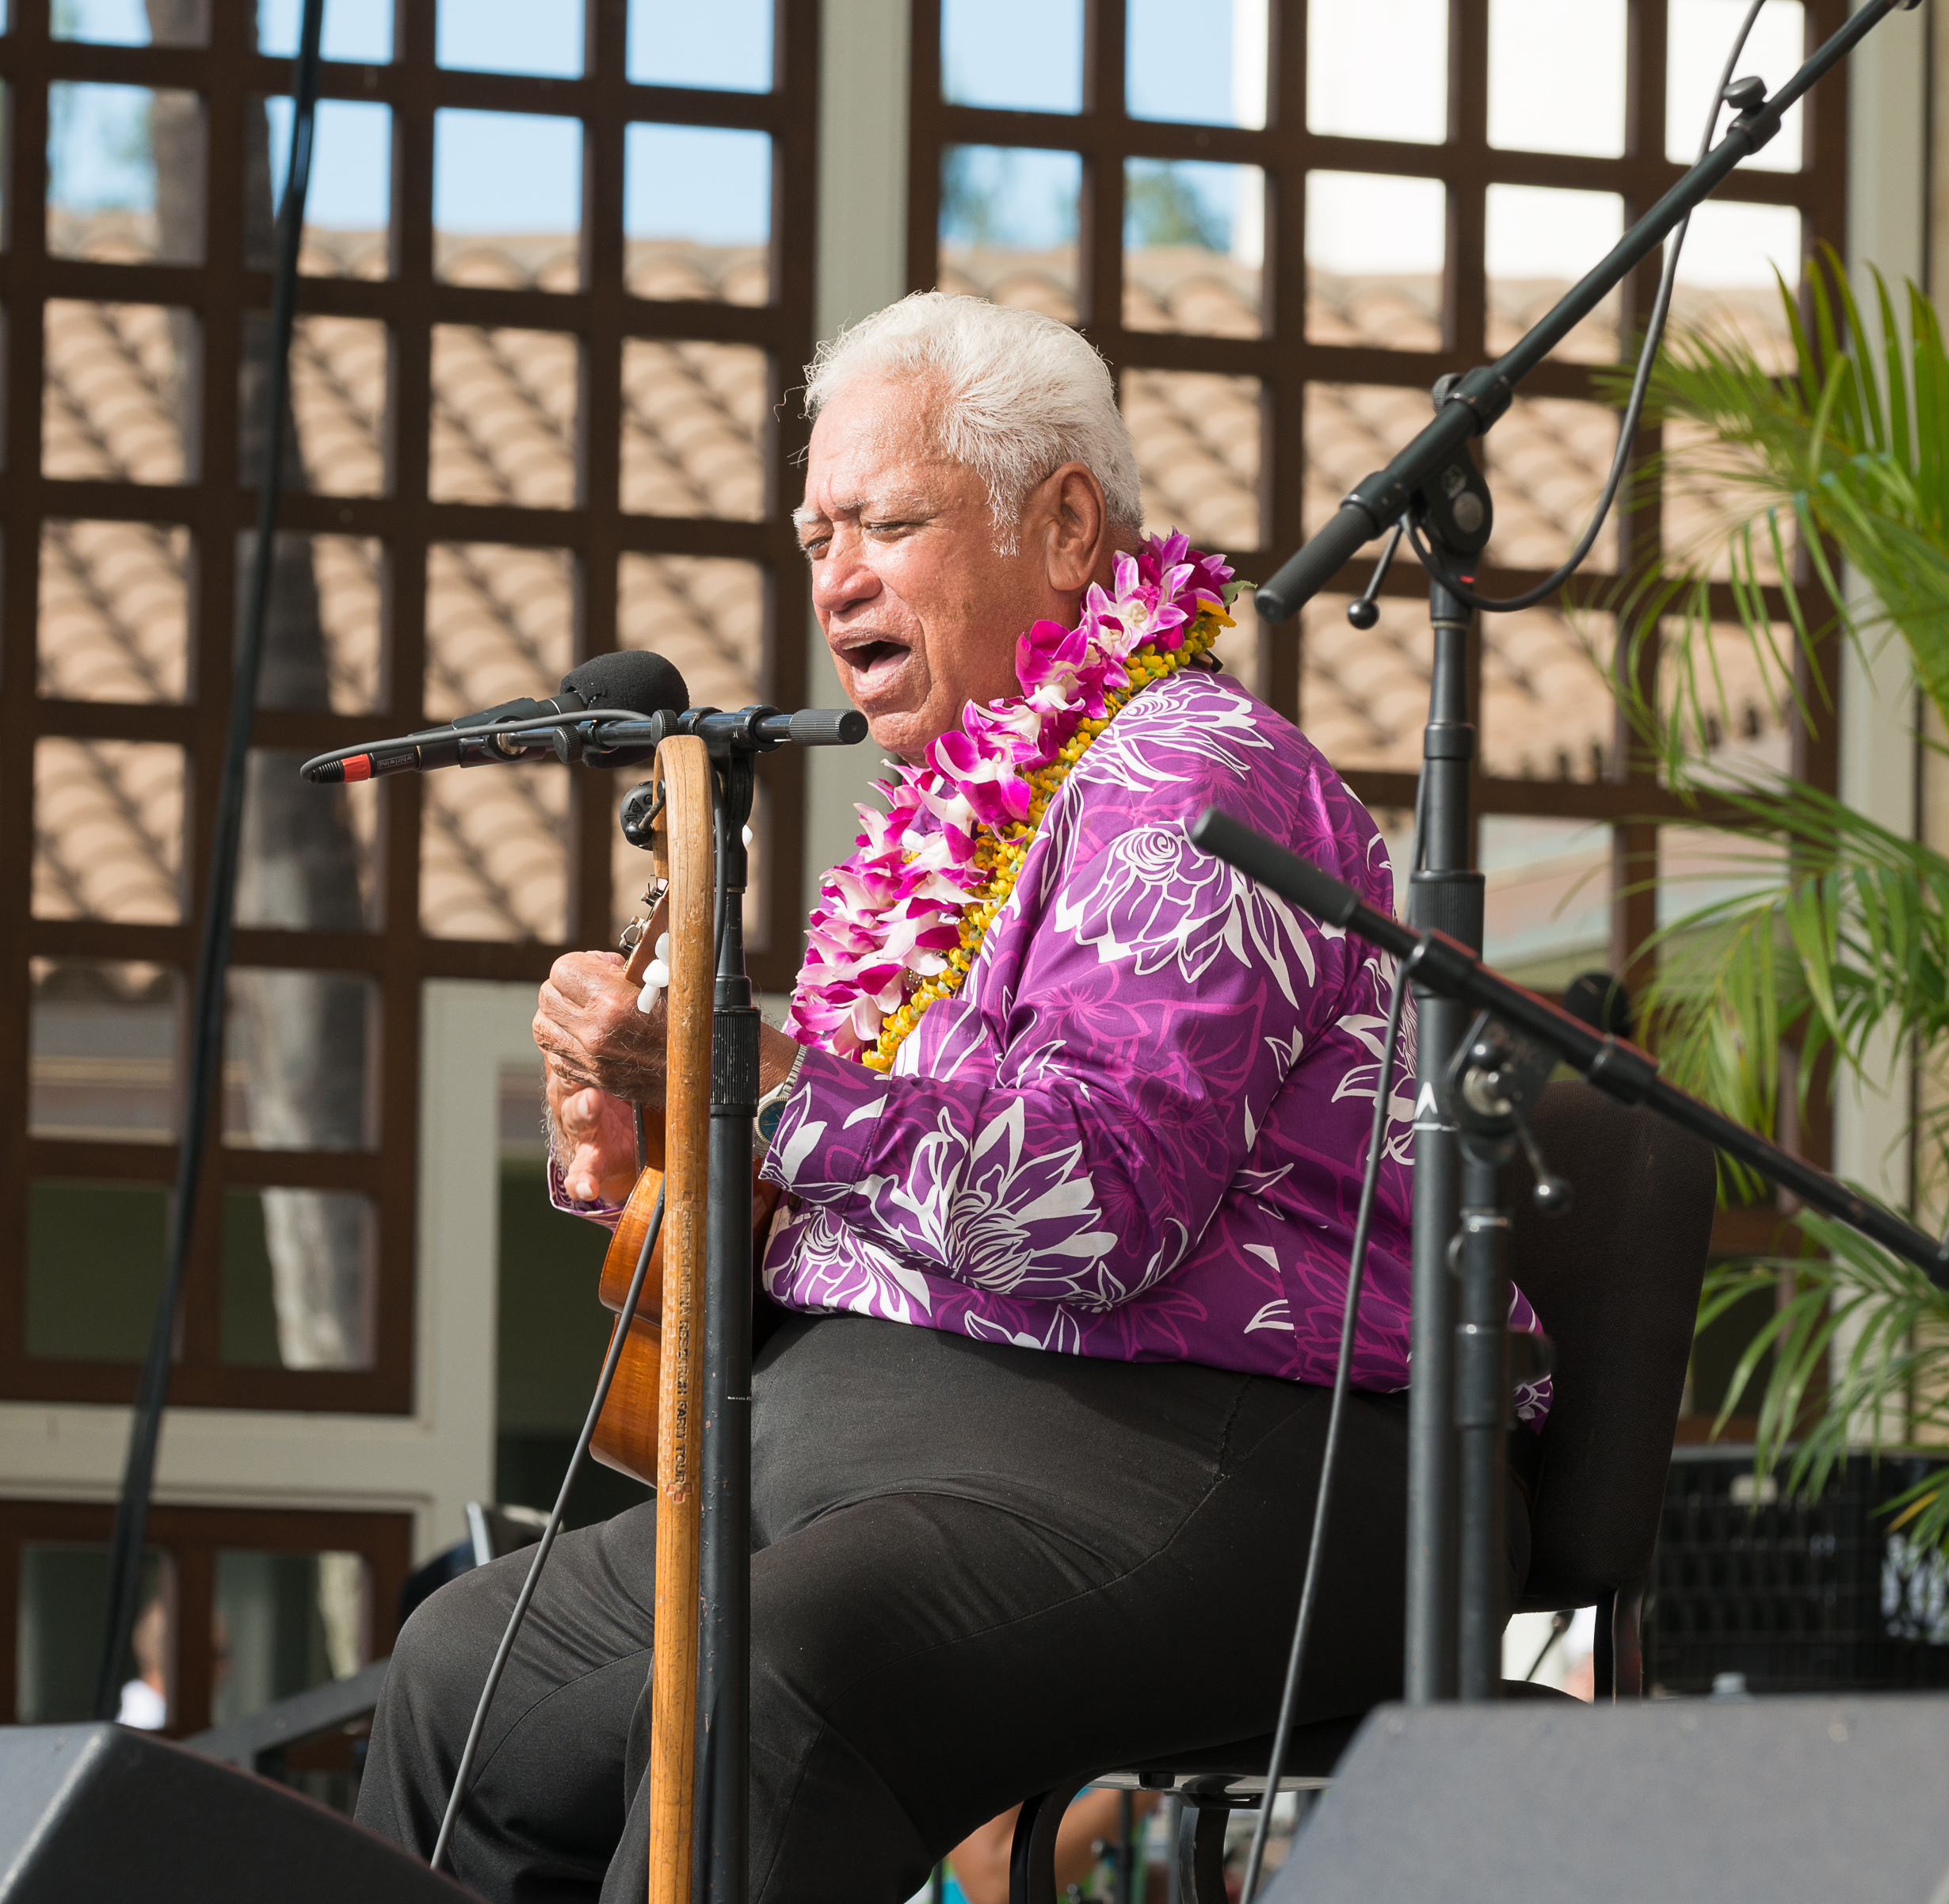 11th Annual Maui 'Ukulele Festival. PC: Richard Hoʻopiʻi, credit Aubrey Hord Photography.